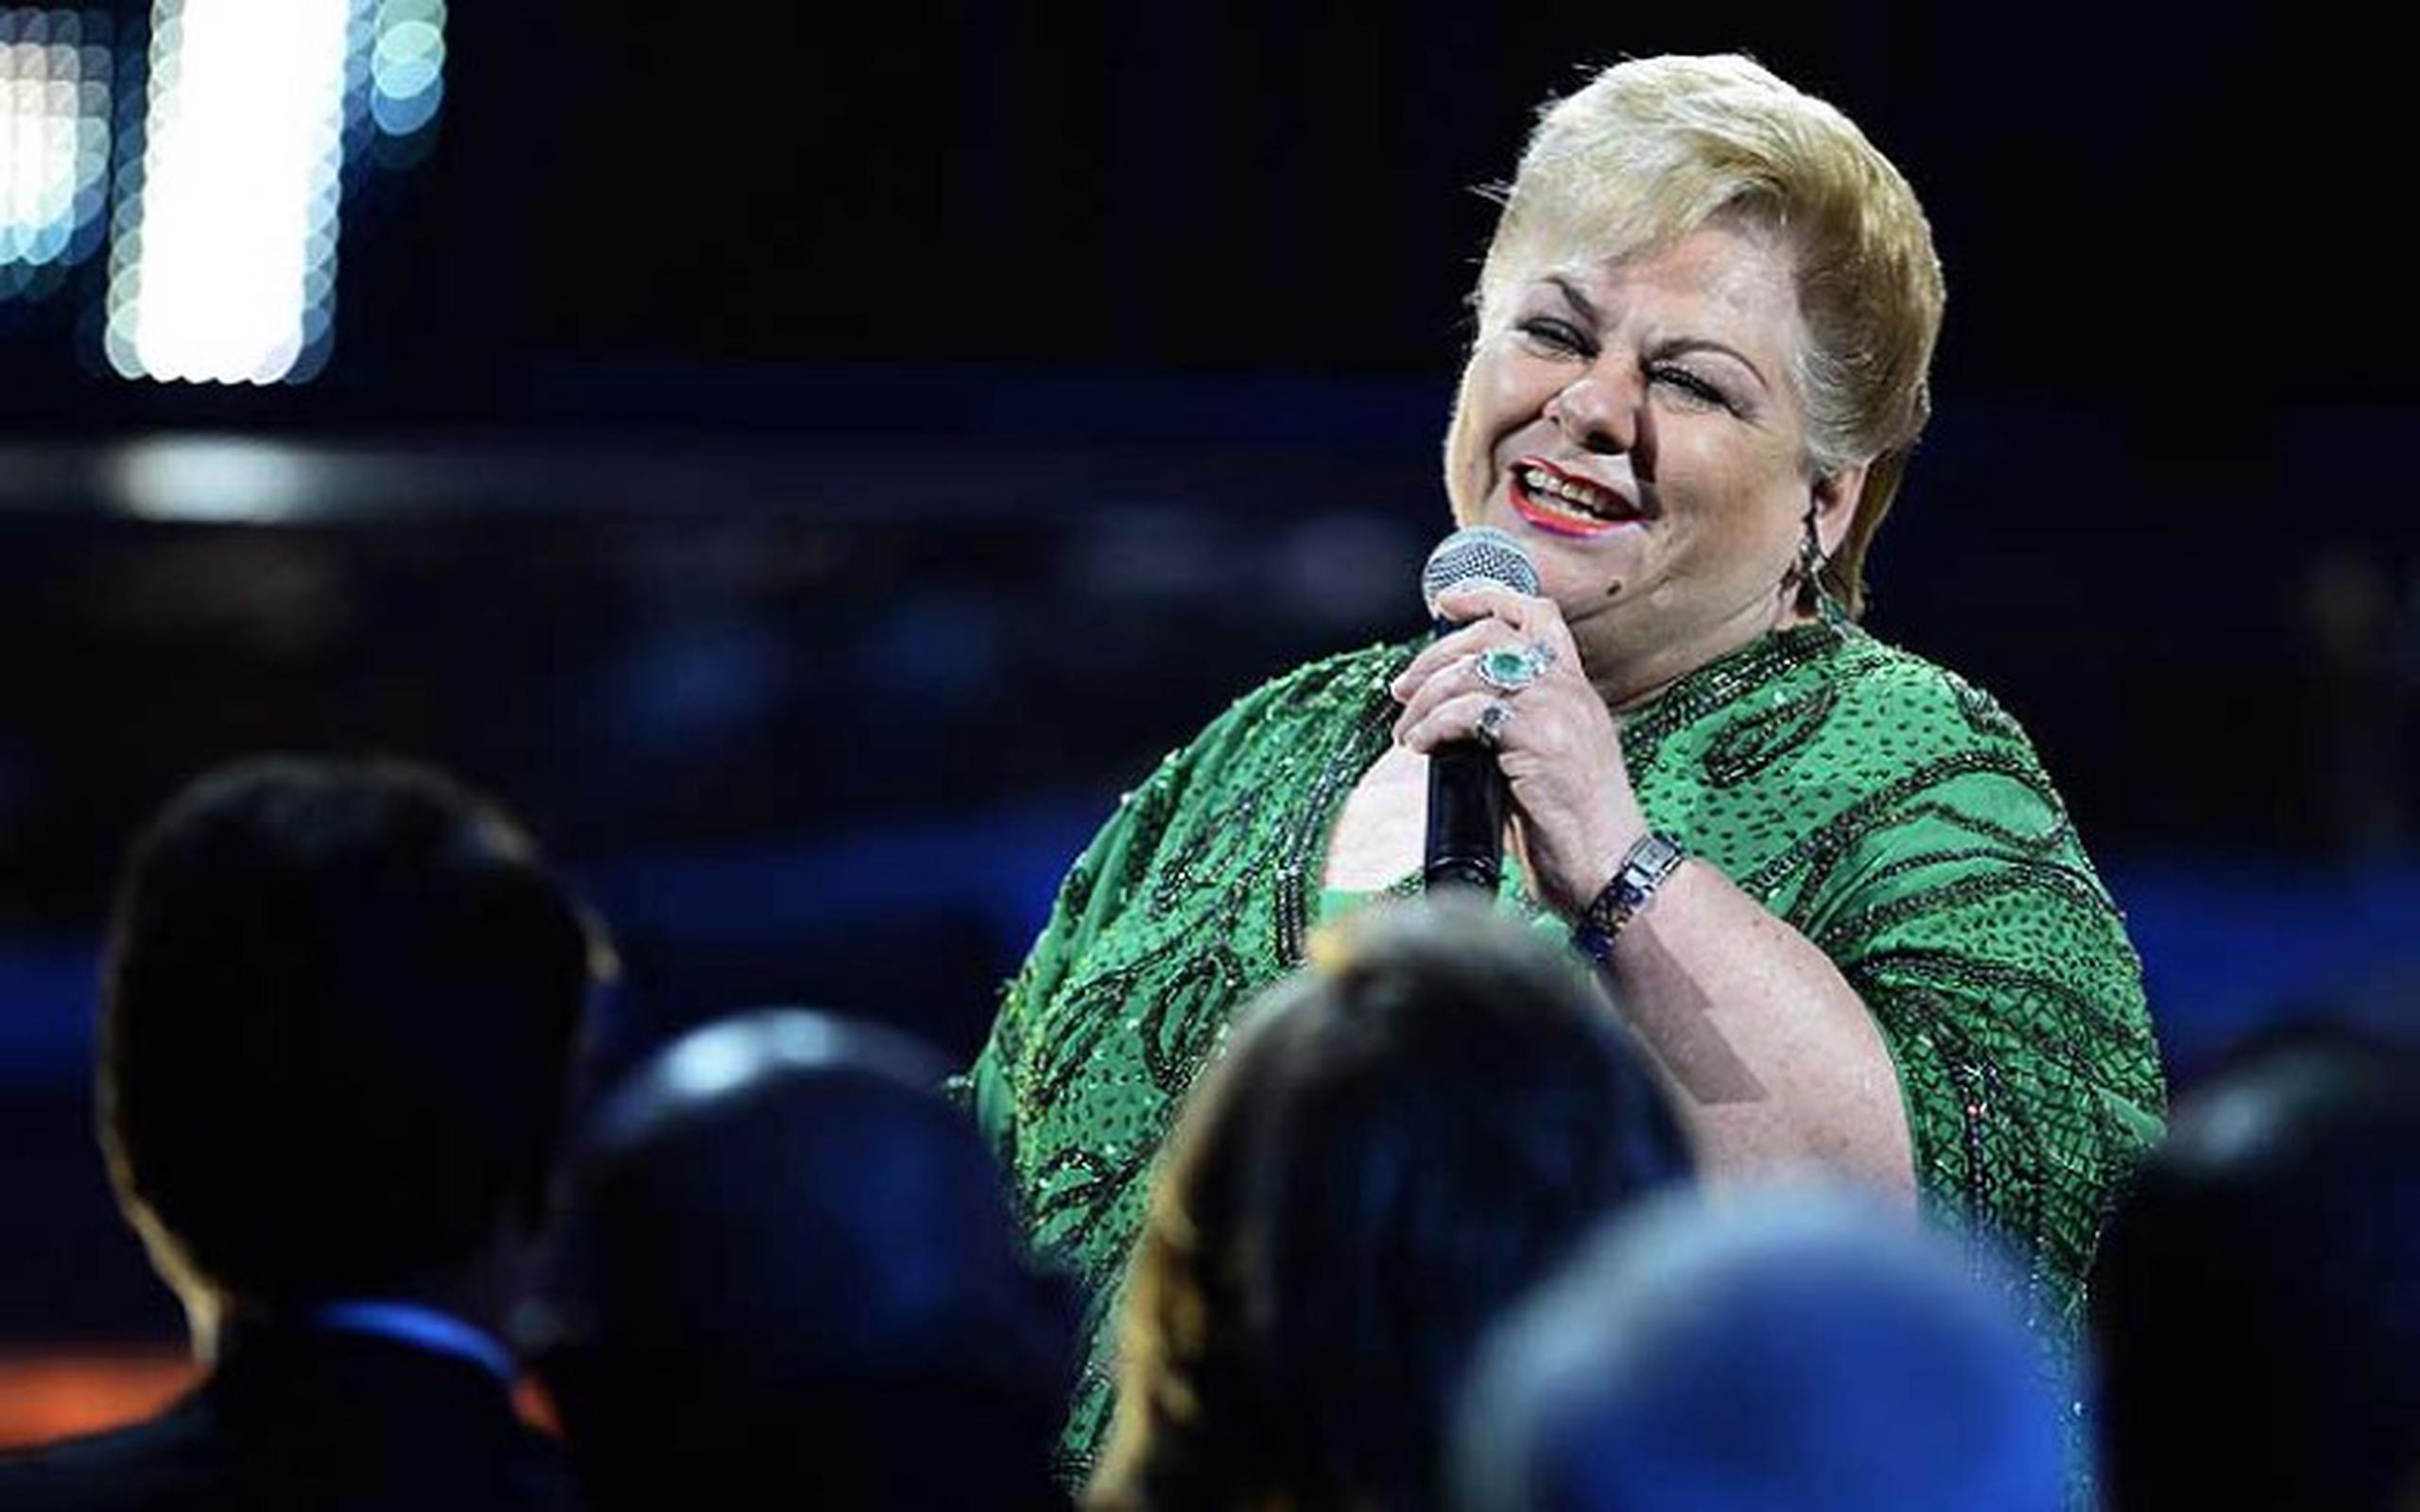 La cantante mexicana Paquita la del Barrio interpretó "Romeo Y Su Nieta" durante la ceremonia. (EFE/Paul Buck)